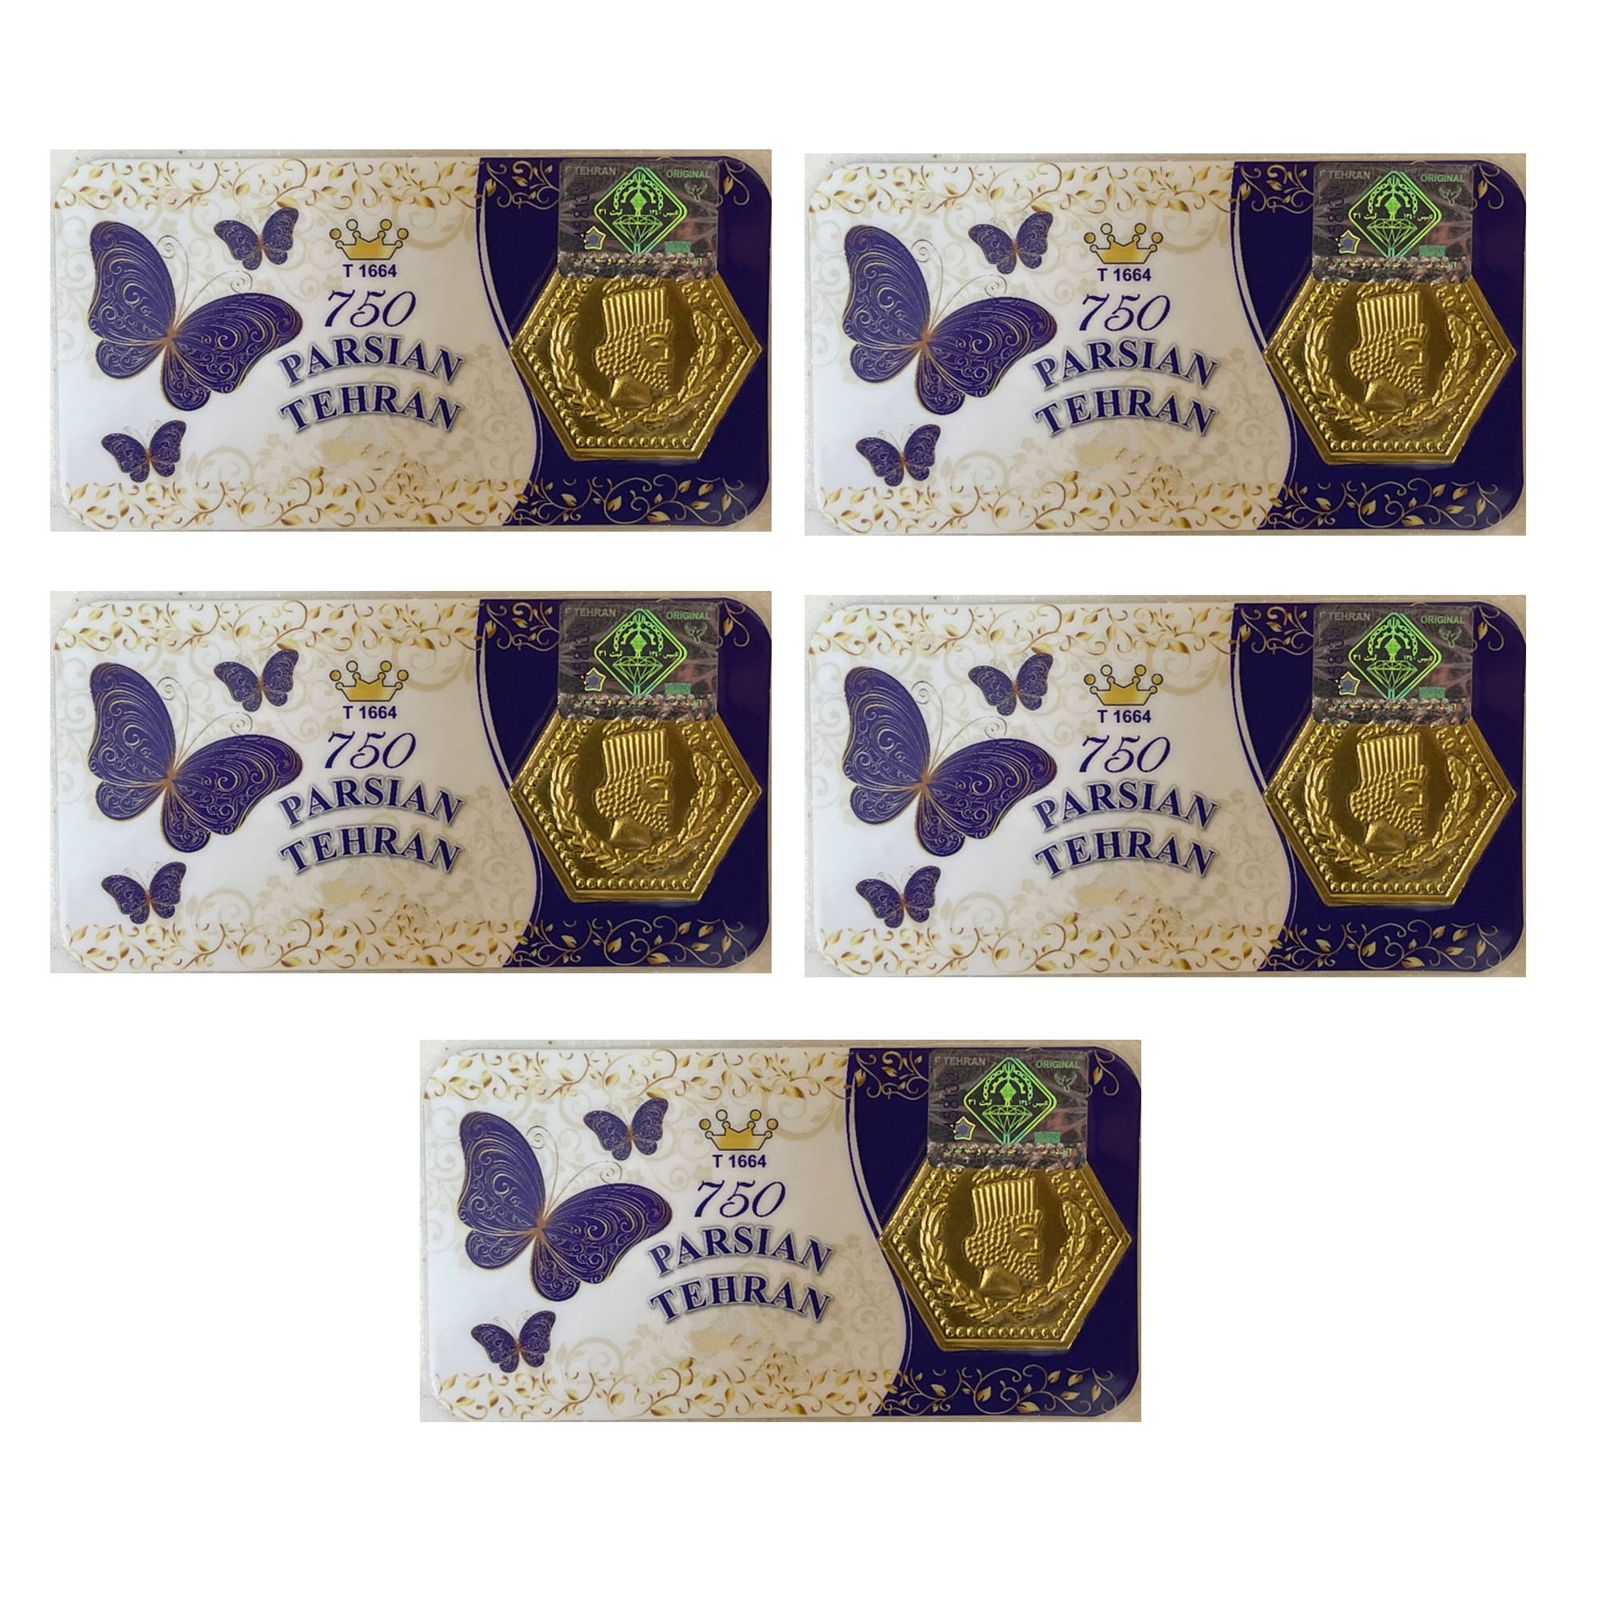 سکه گرمی طلا 18 عیار پارسیان تهران مدل K412 مجموعه 5 عددی -  - 1